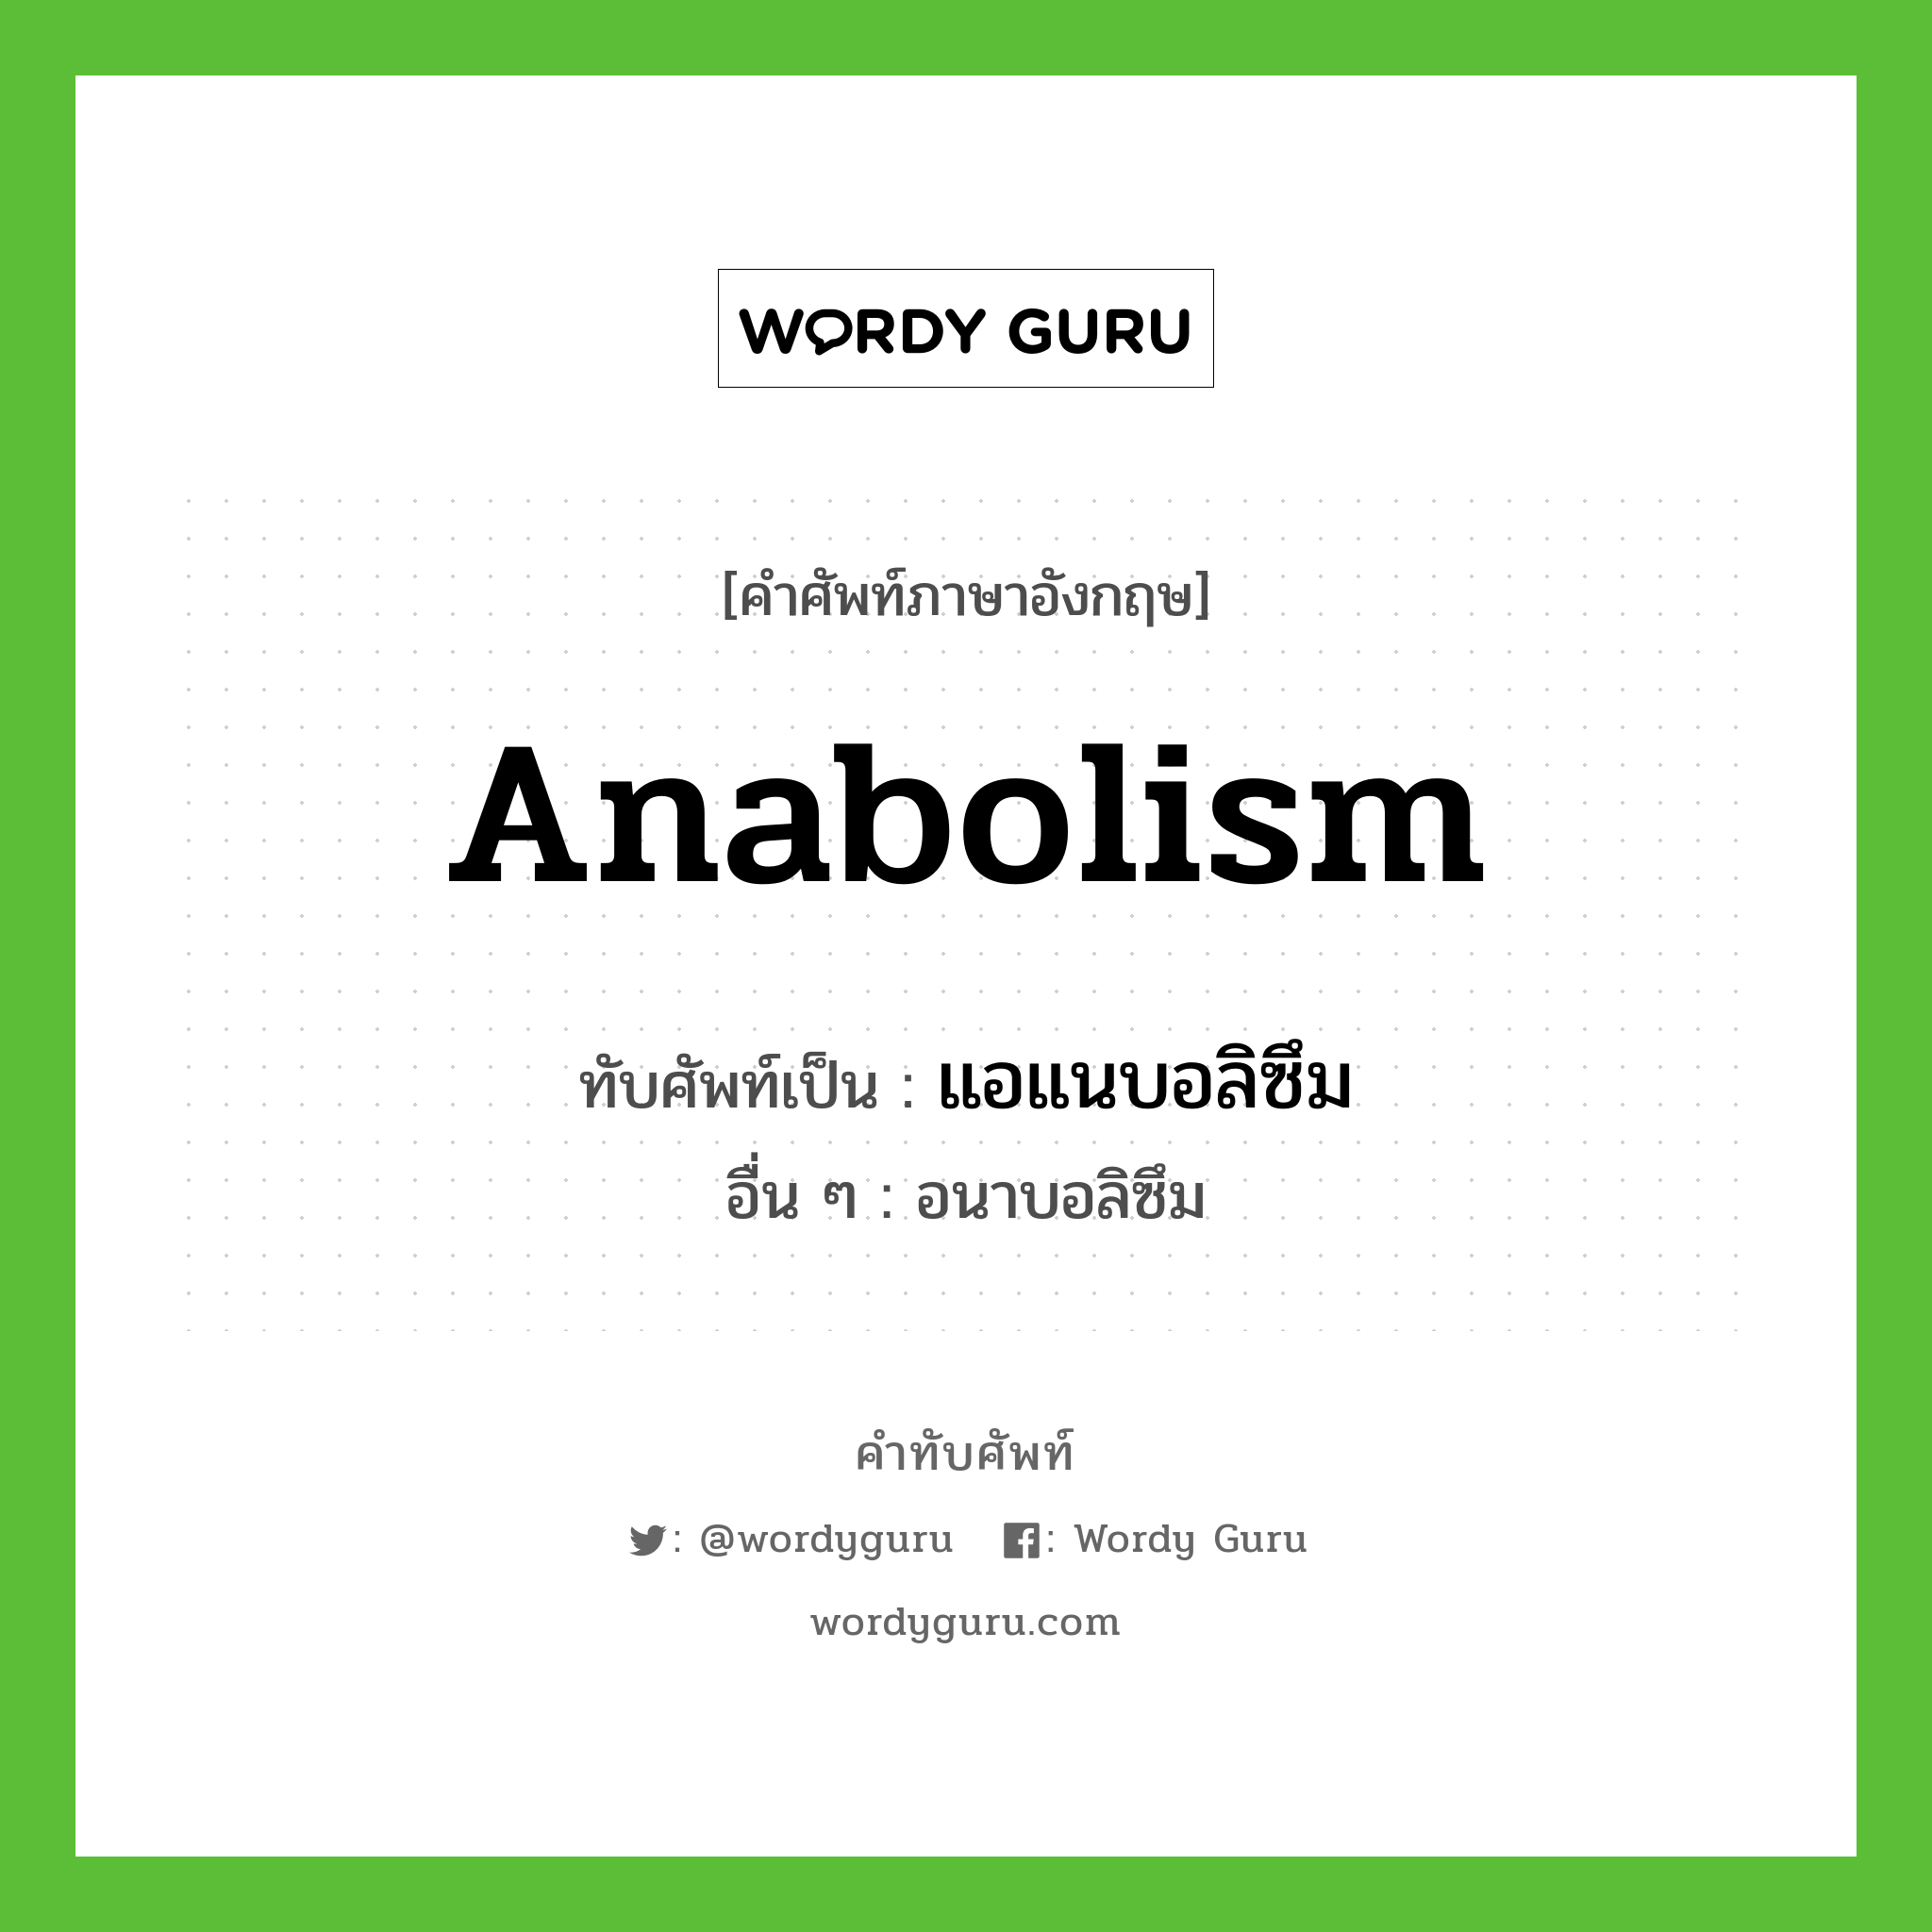 แอแนบอลิซึม เขียนอย่างไร?, คำศัพท์ภาษาอังกฤษ แอแนบอลิซึม ทับศัพท์เป็น Anabolism อื่น ๆ อนาบอลิซึม